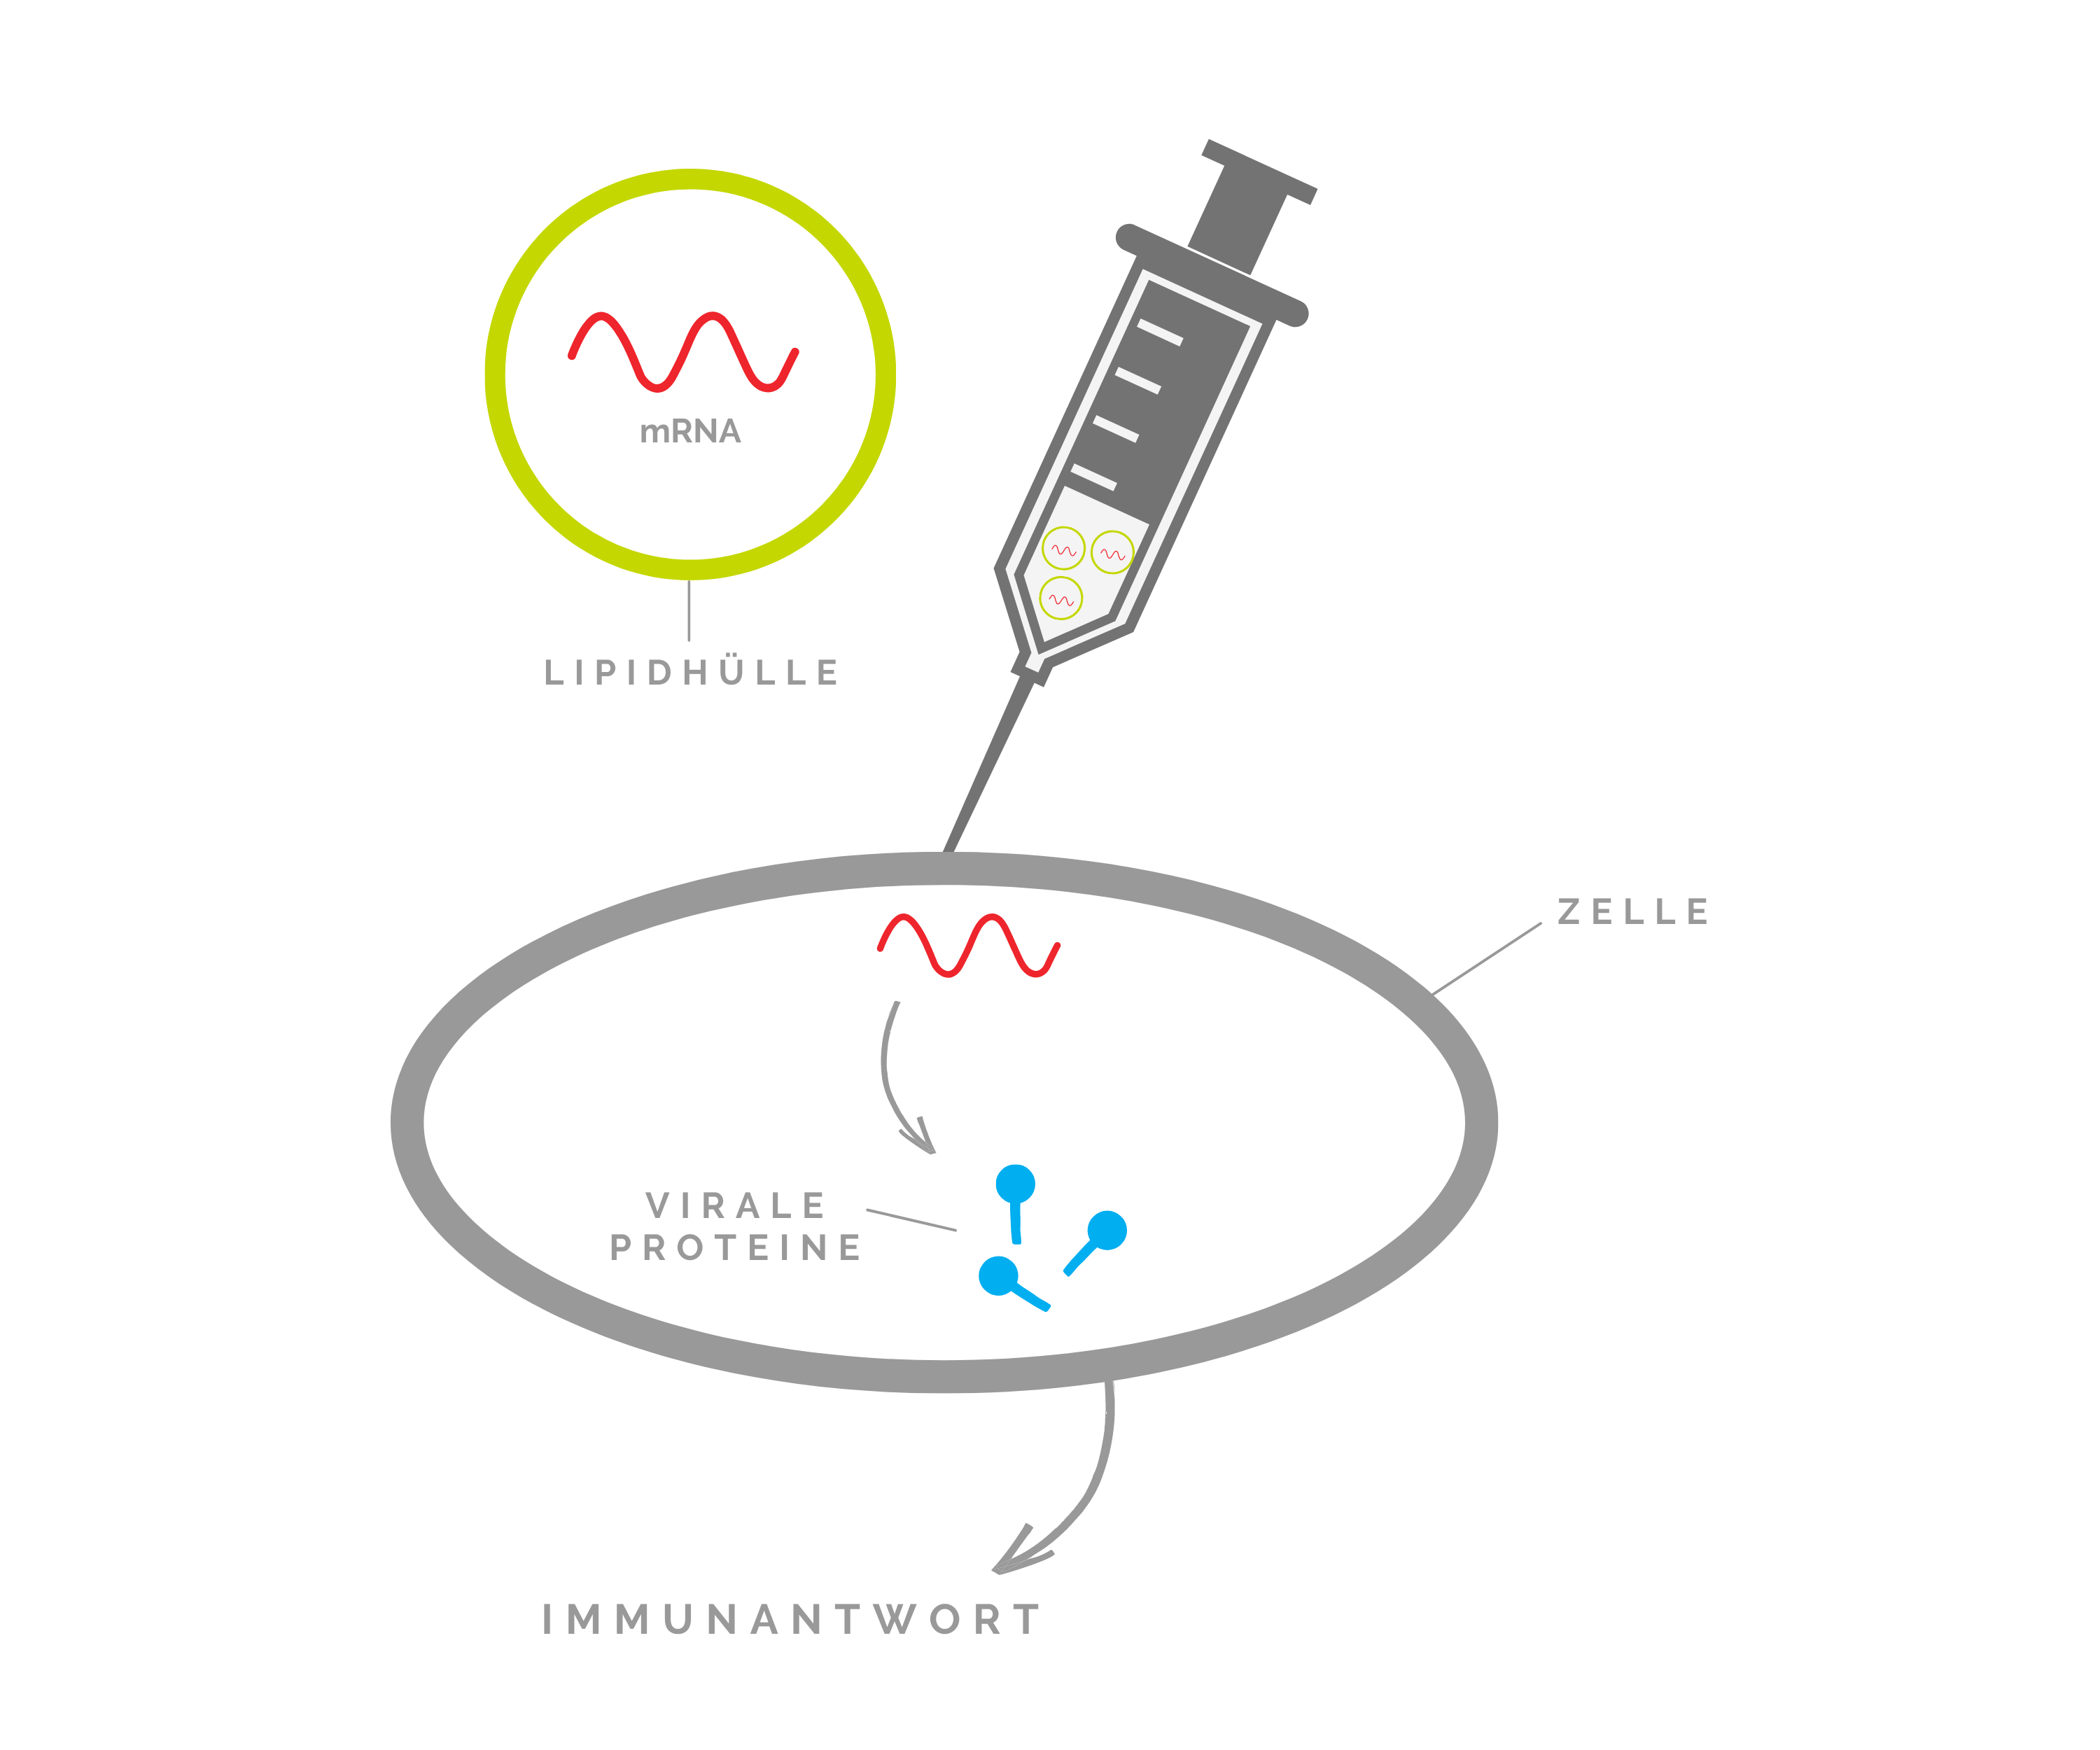 mRNA Impfstoff aus dem Reinraum gegen Corona - Mutation